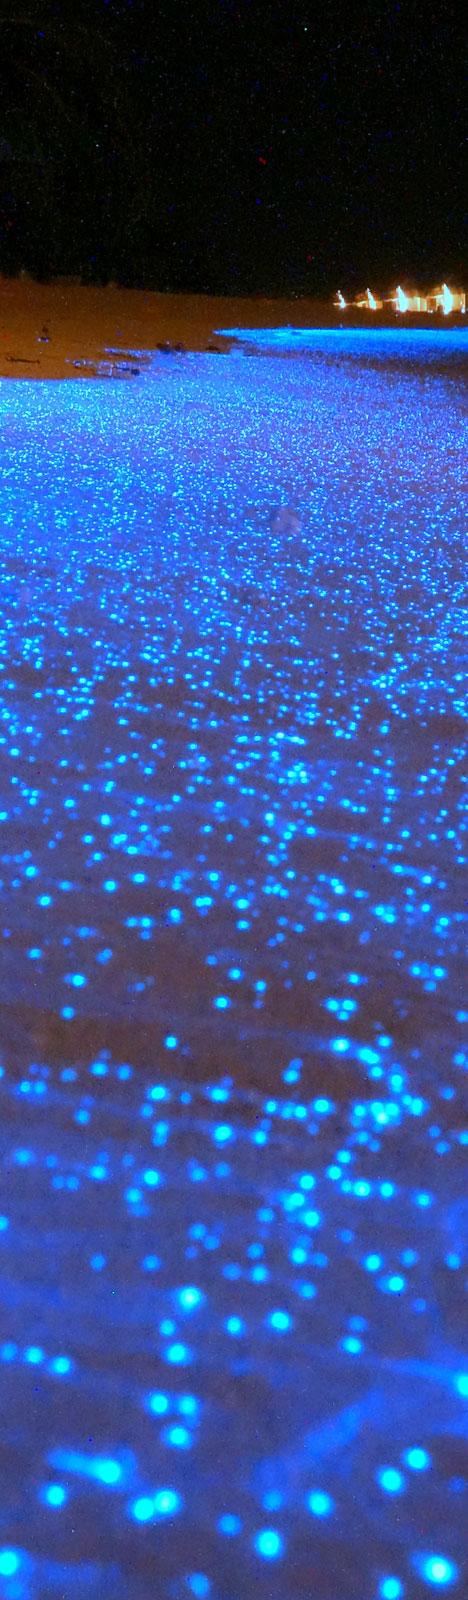 maldives travel facts fluorescent sea